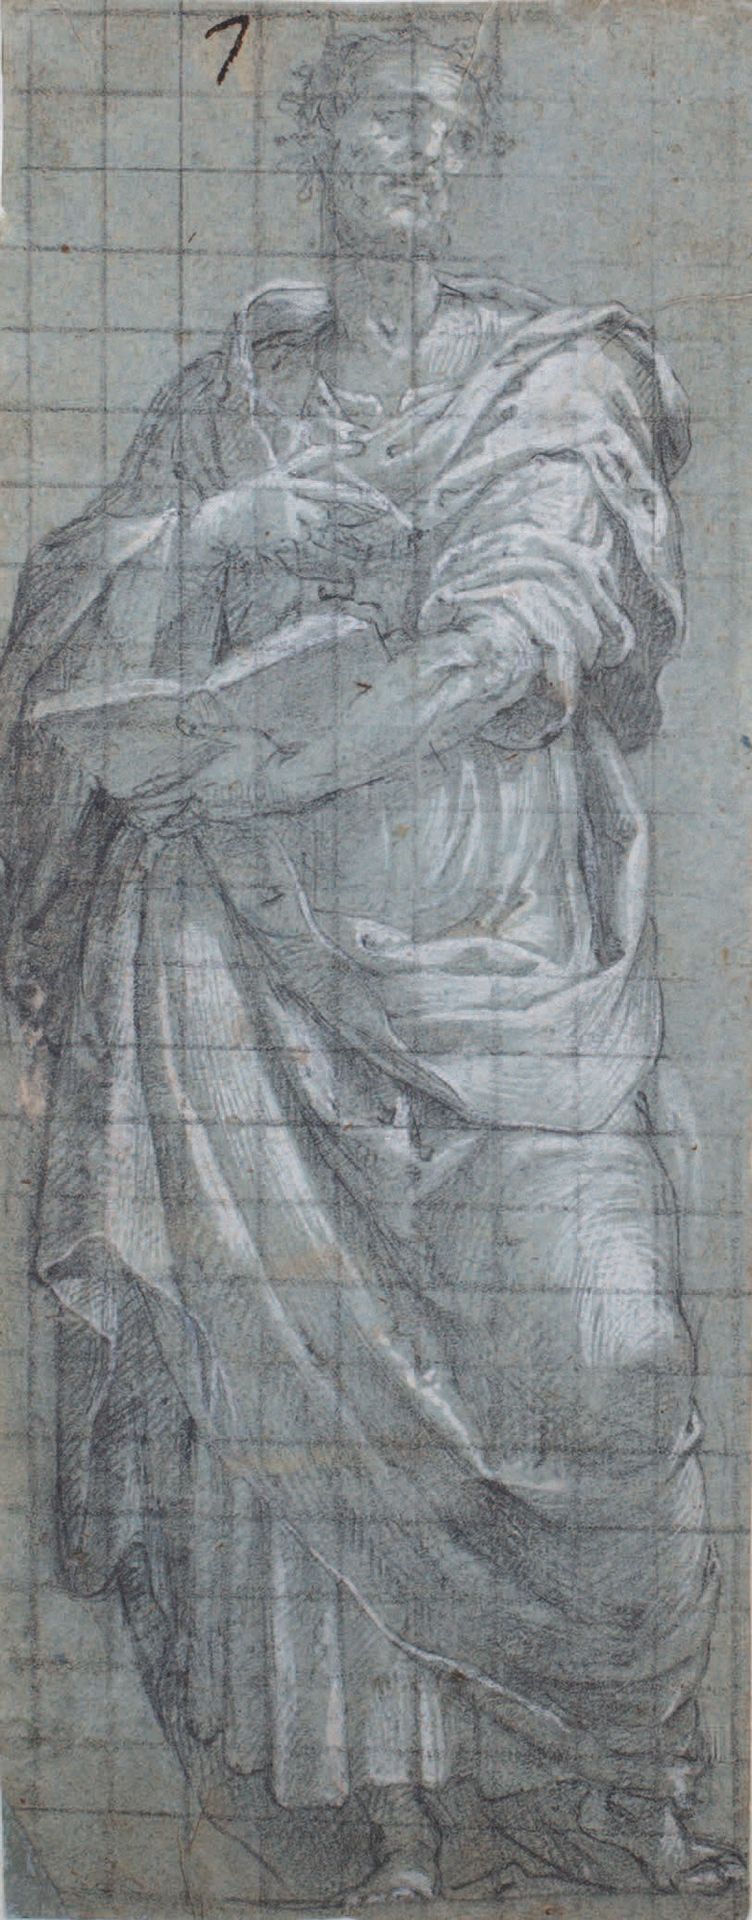 Attribuito a Callisto PIAZZA (1500-1561) 
两个使徒的形象
黑石，白铅
方形纸
Deux figures d'Apôtr&hellip;